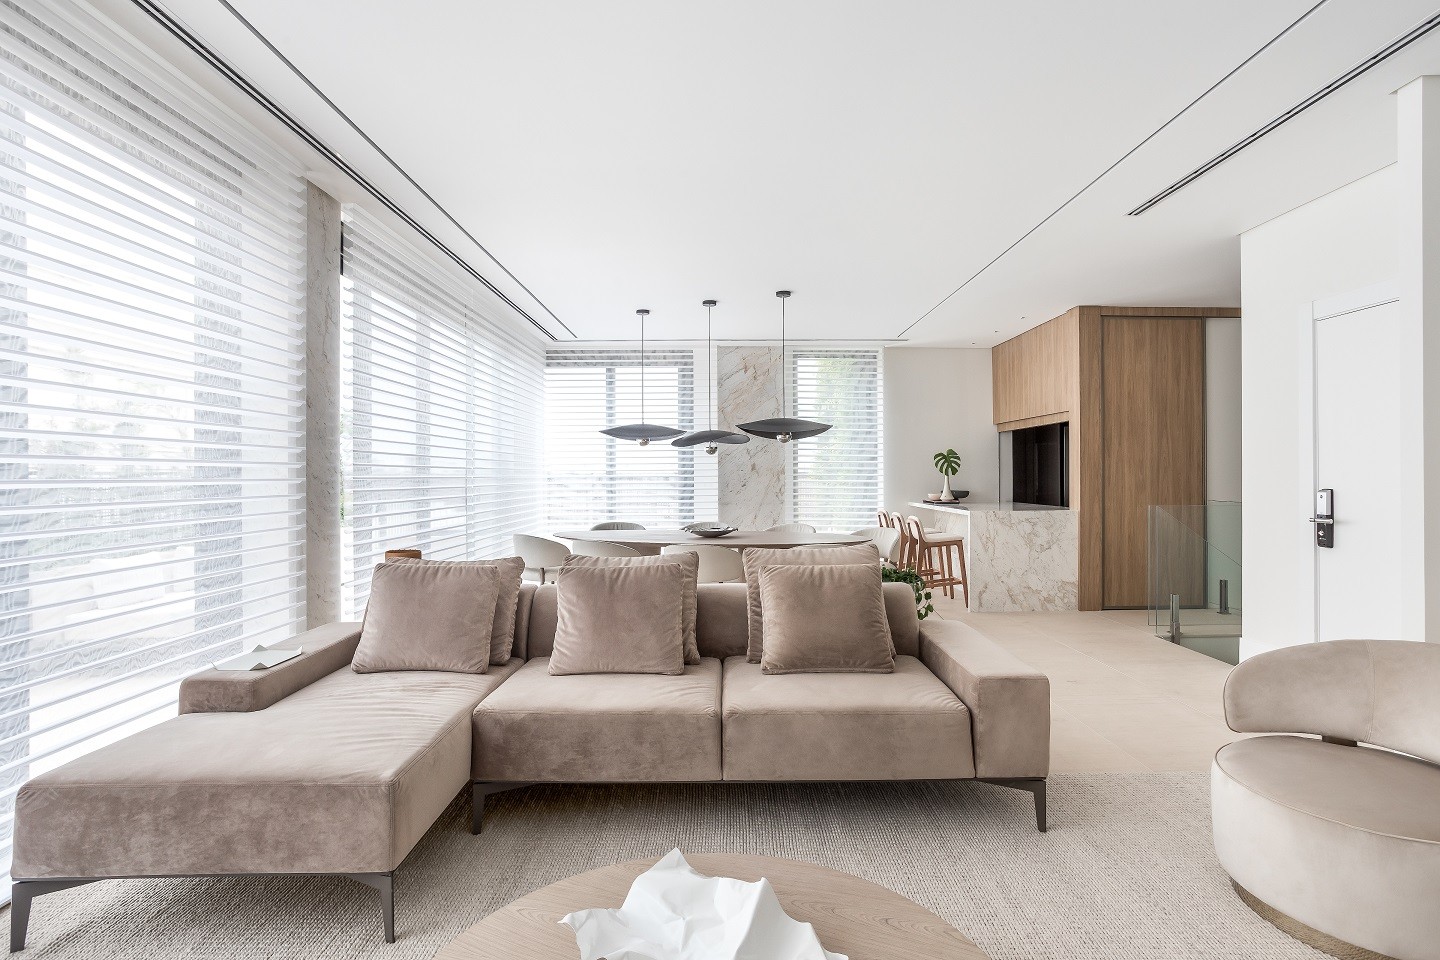 Apartamento de 270 m² tem tons sóbrios, elementos naturais e integração (Foto: Eduardo Macarios)